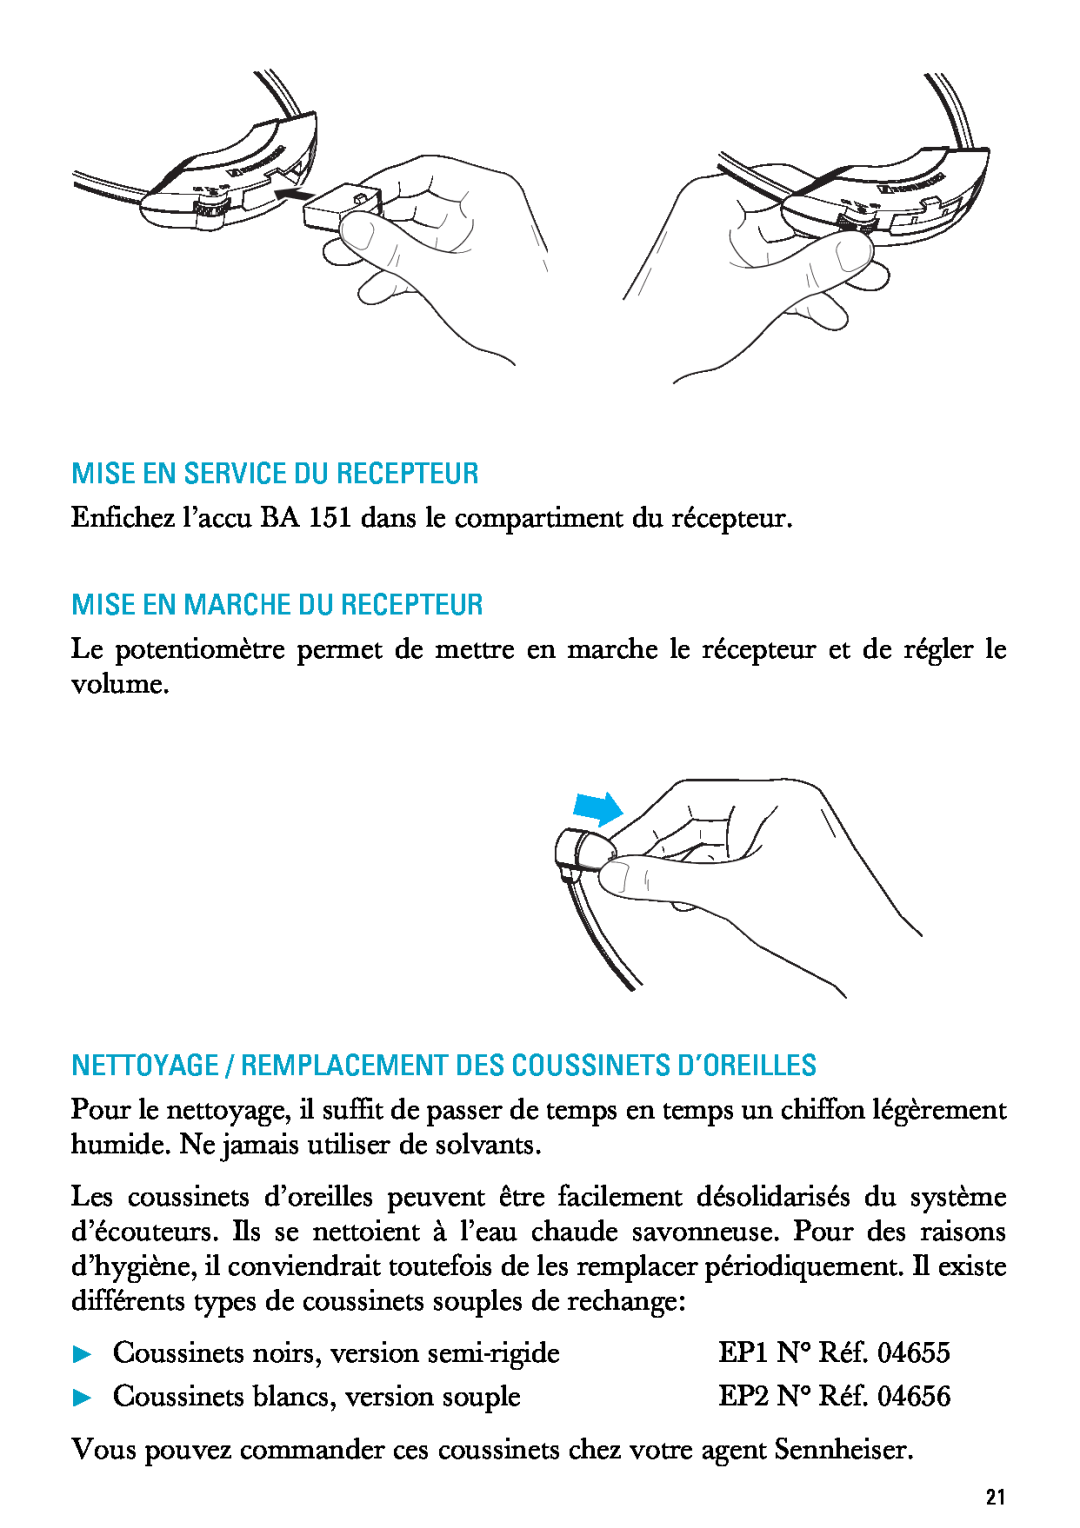 Sennheiser RI 300 manual Mise En Service Du Recepteur, Mise En Marche Du Recepteur, Coussinets noirs, version semi-rigide 